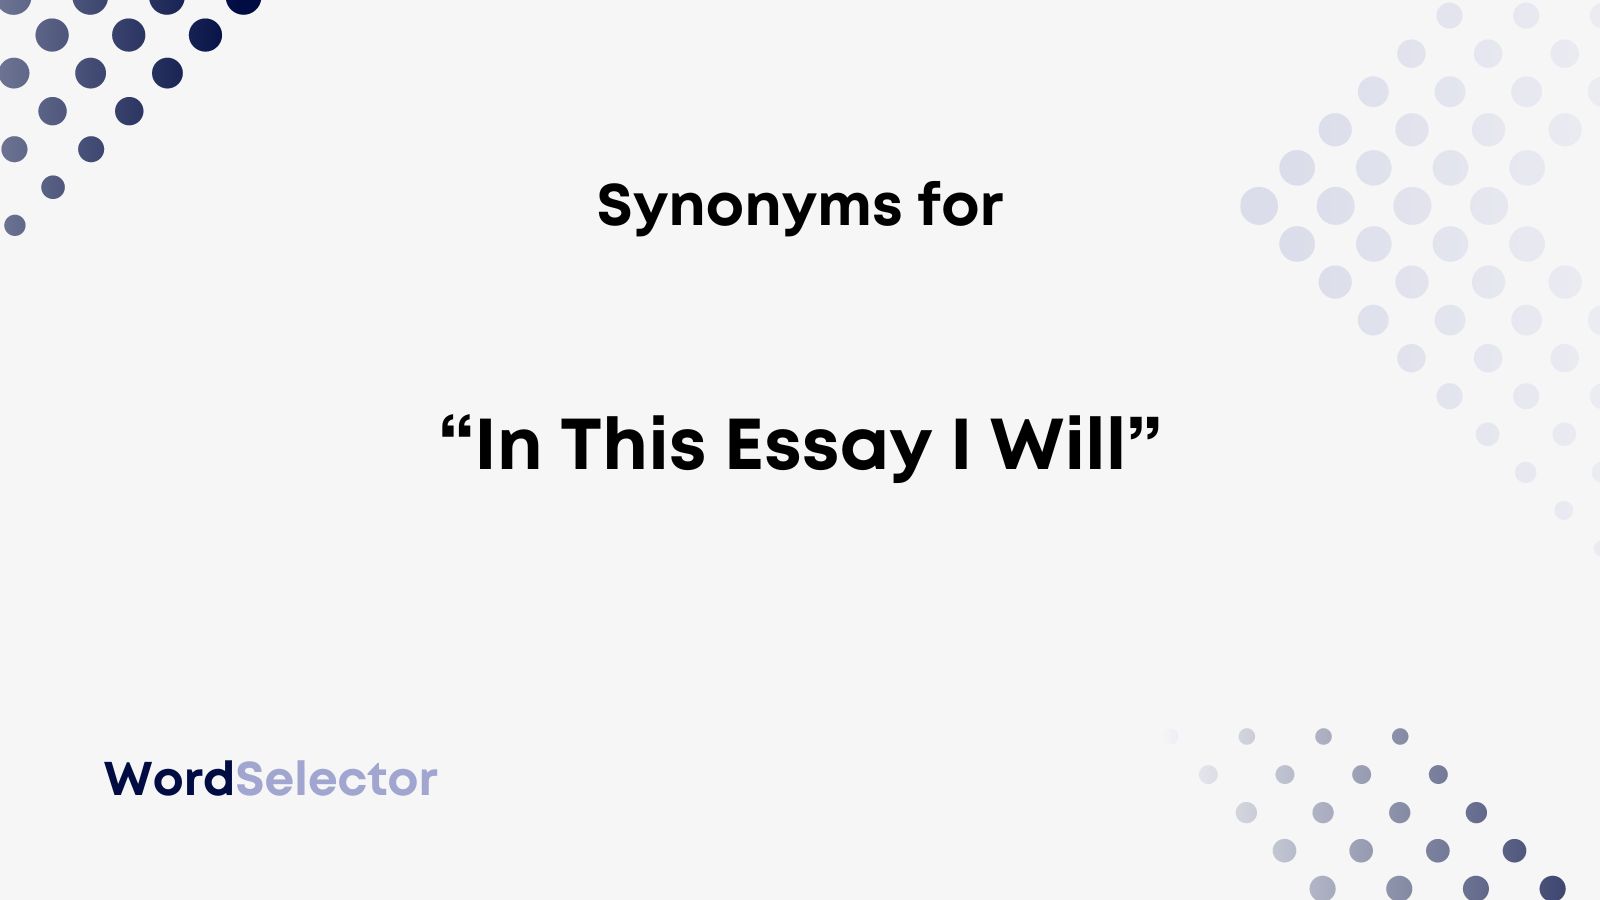 it says synonym for essay